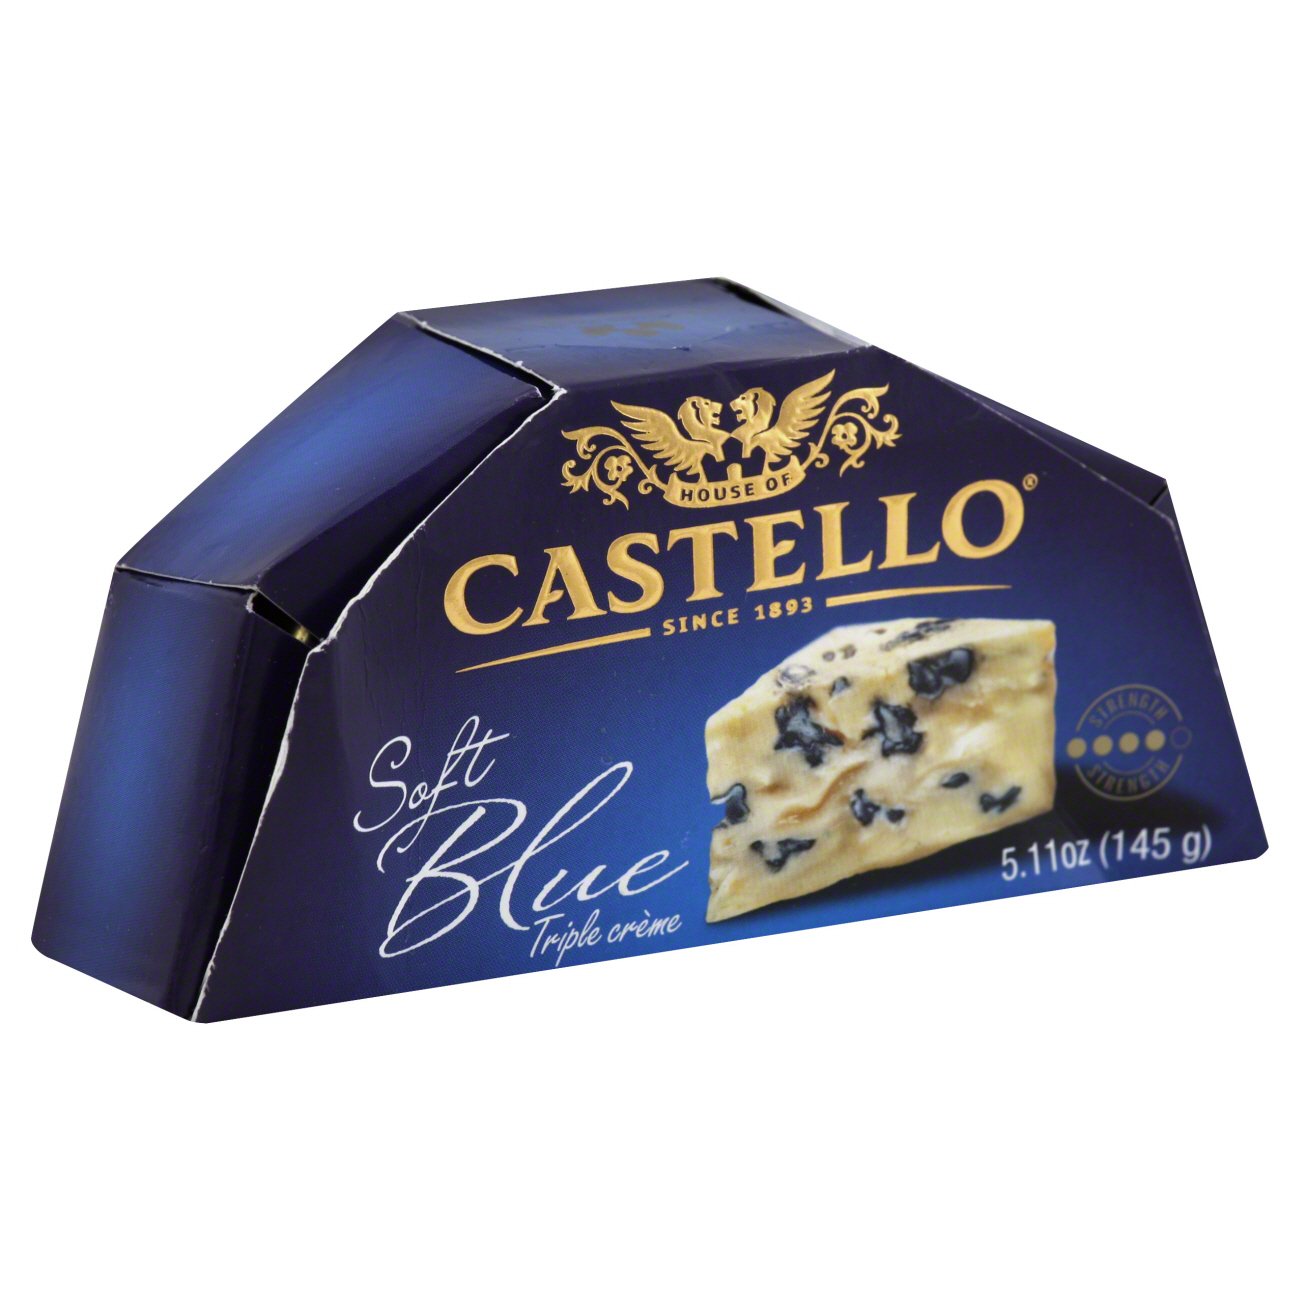 Castello Soft Blue Triple Creme Cheese - Shop Cheese at H-E-B